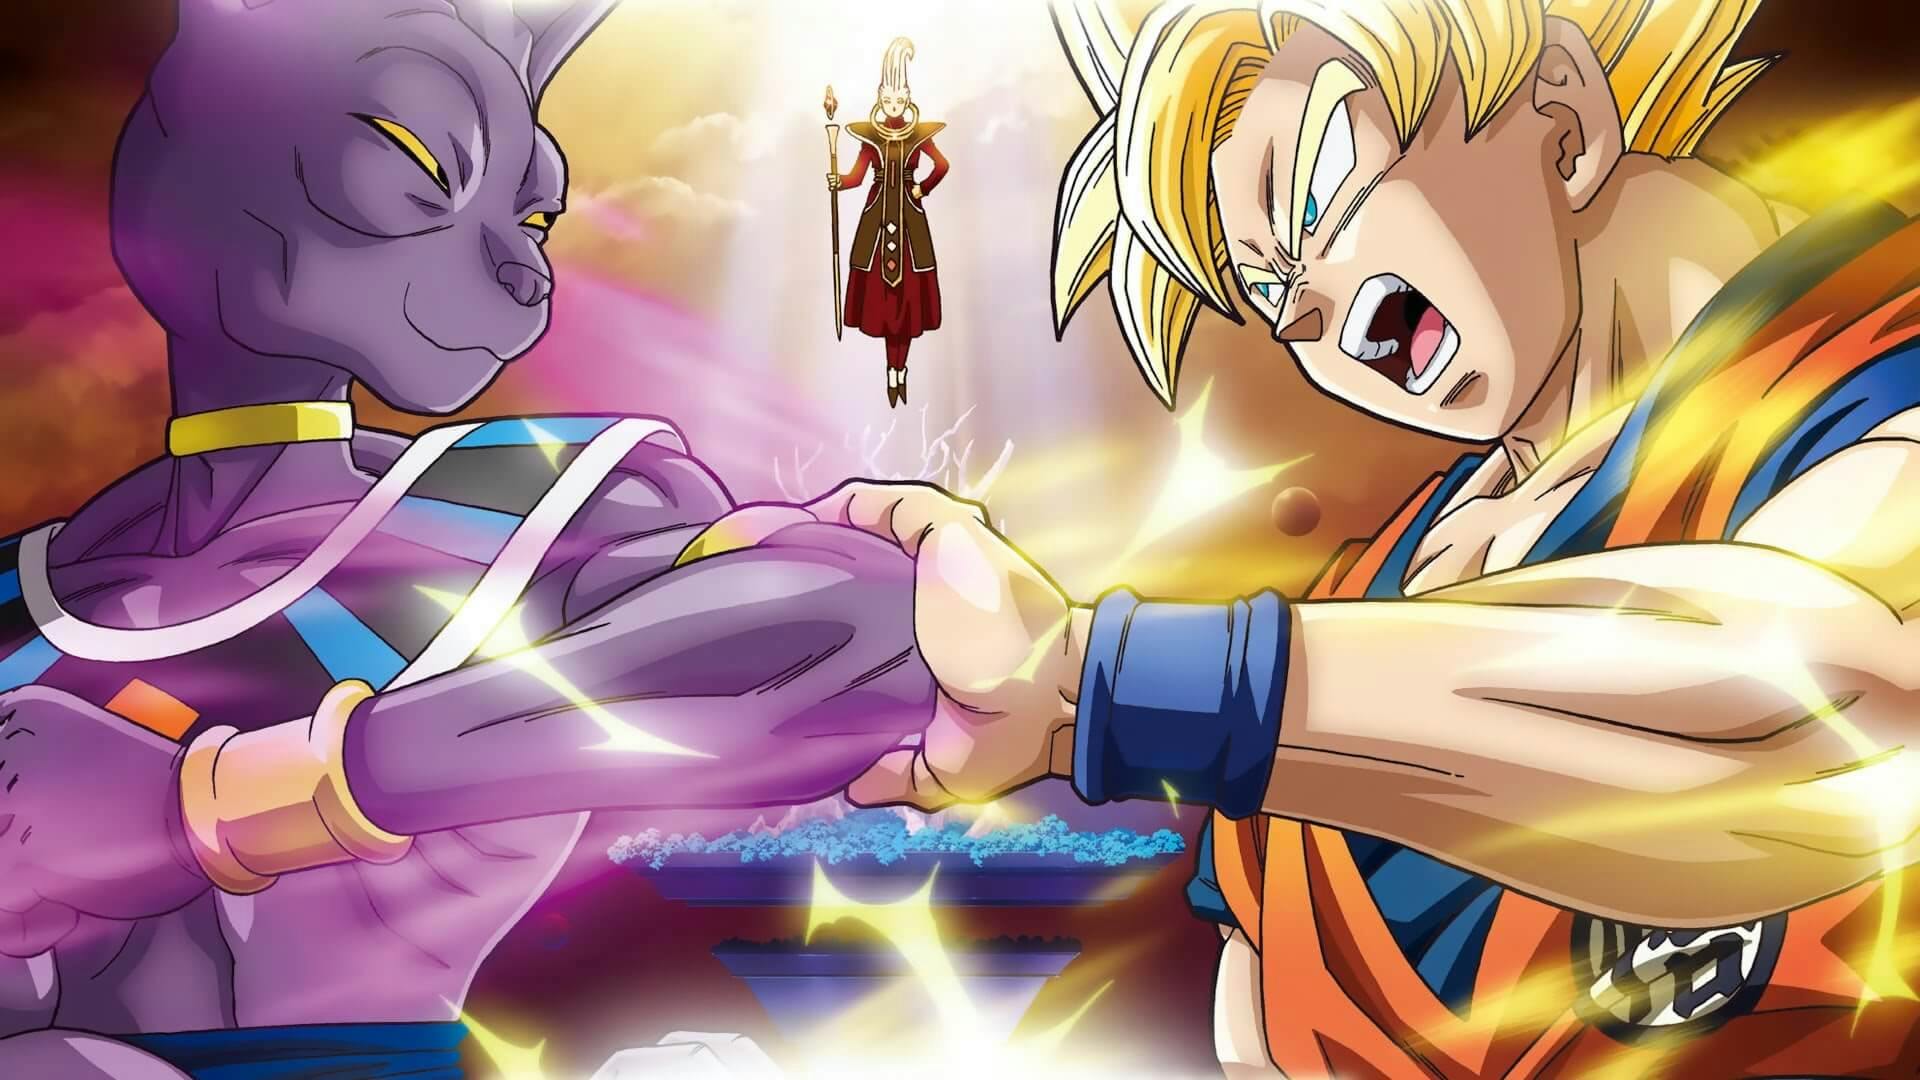 Goku e Bills se encarando com Whis ao fundo na imagem